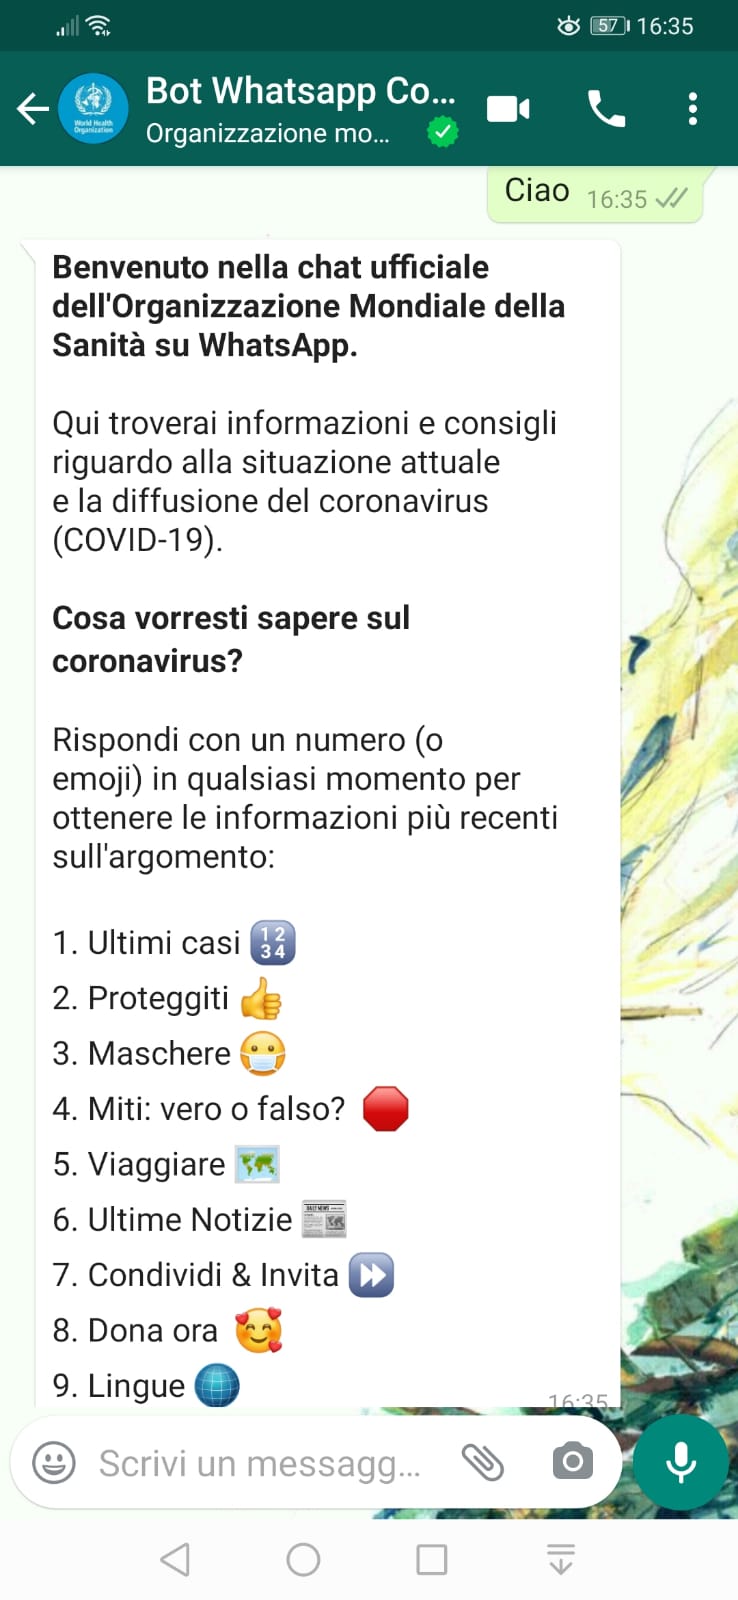 whatsapp coronavirus bot